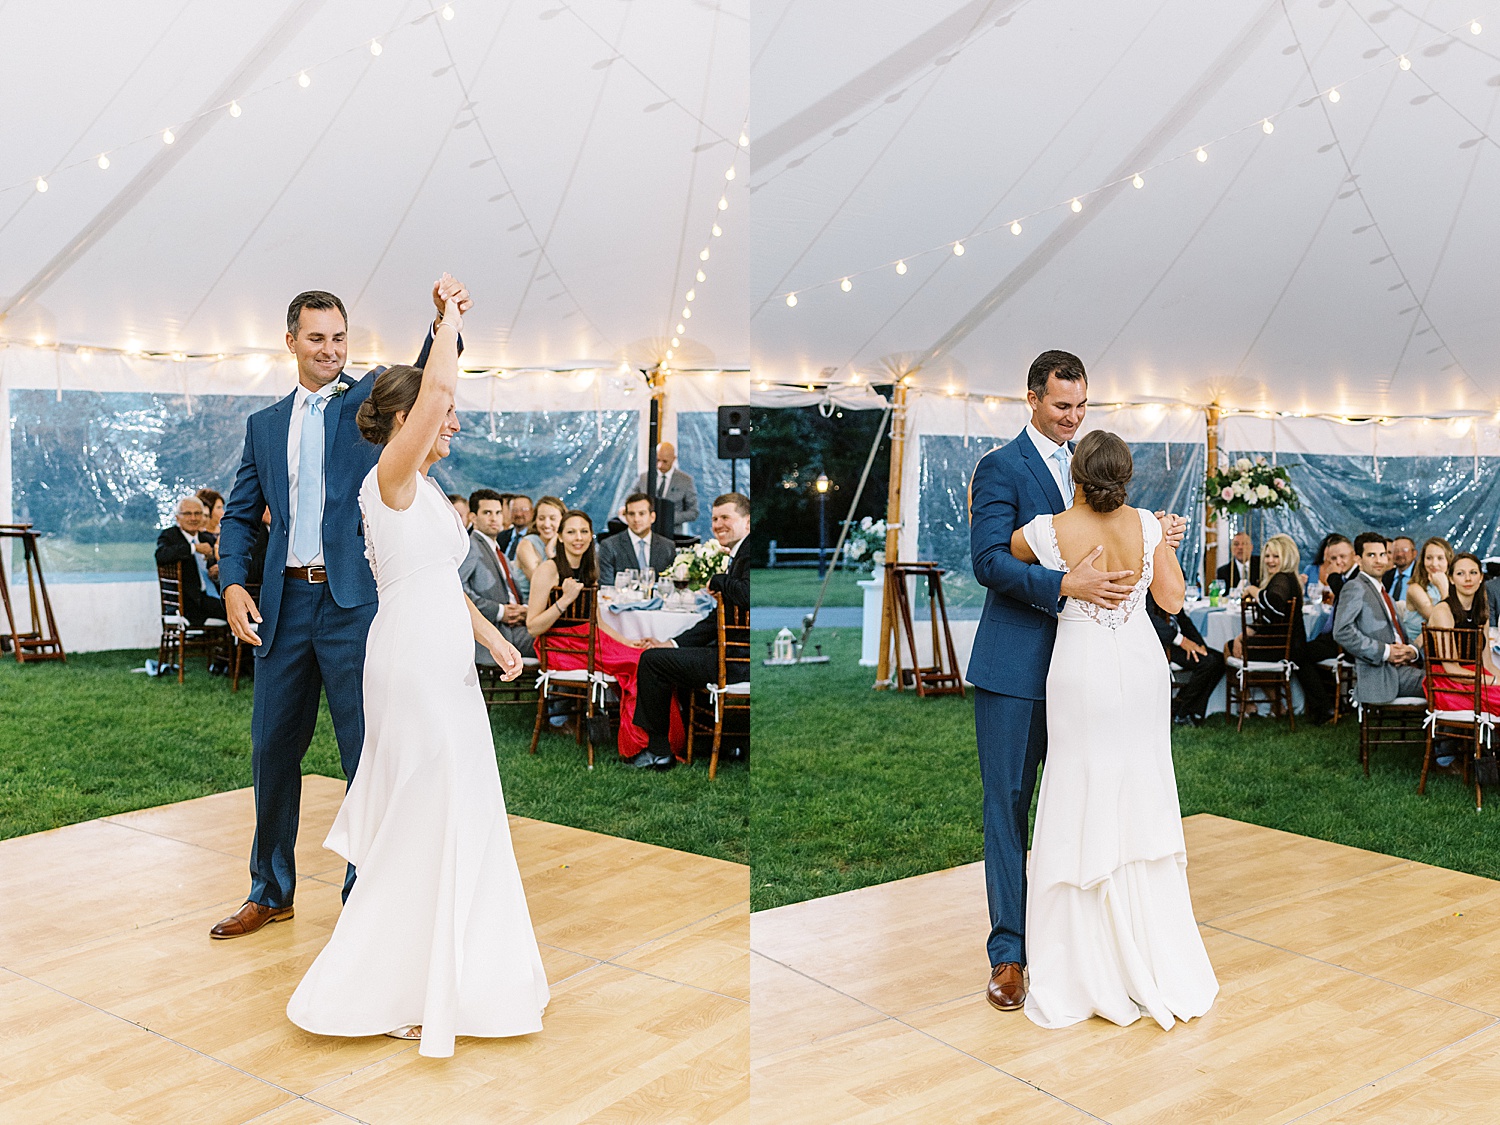 Newlyweds share first dance at their Dennis Inn Wedding